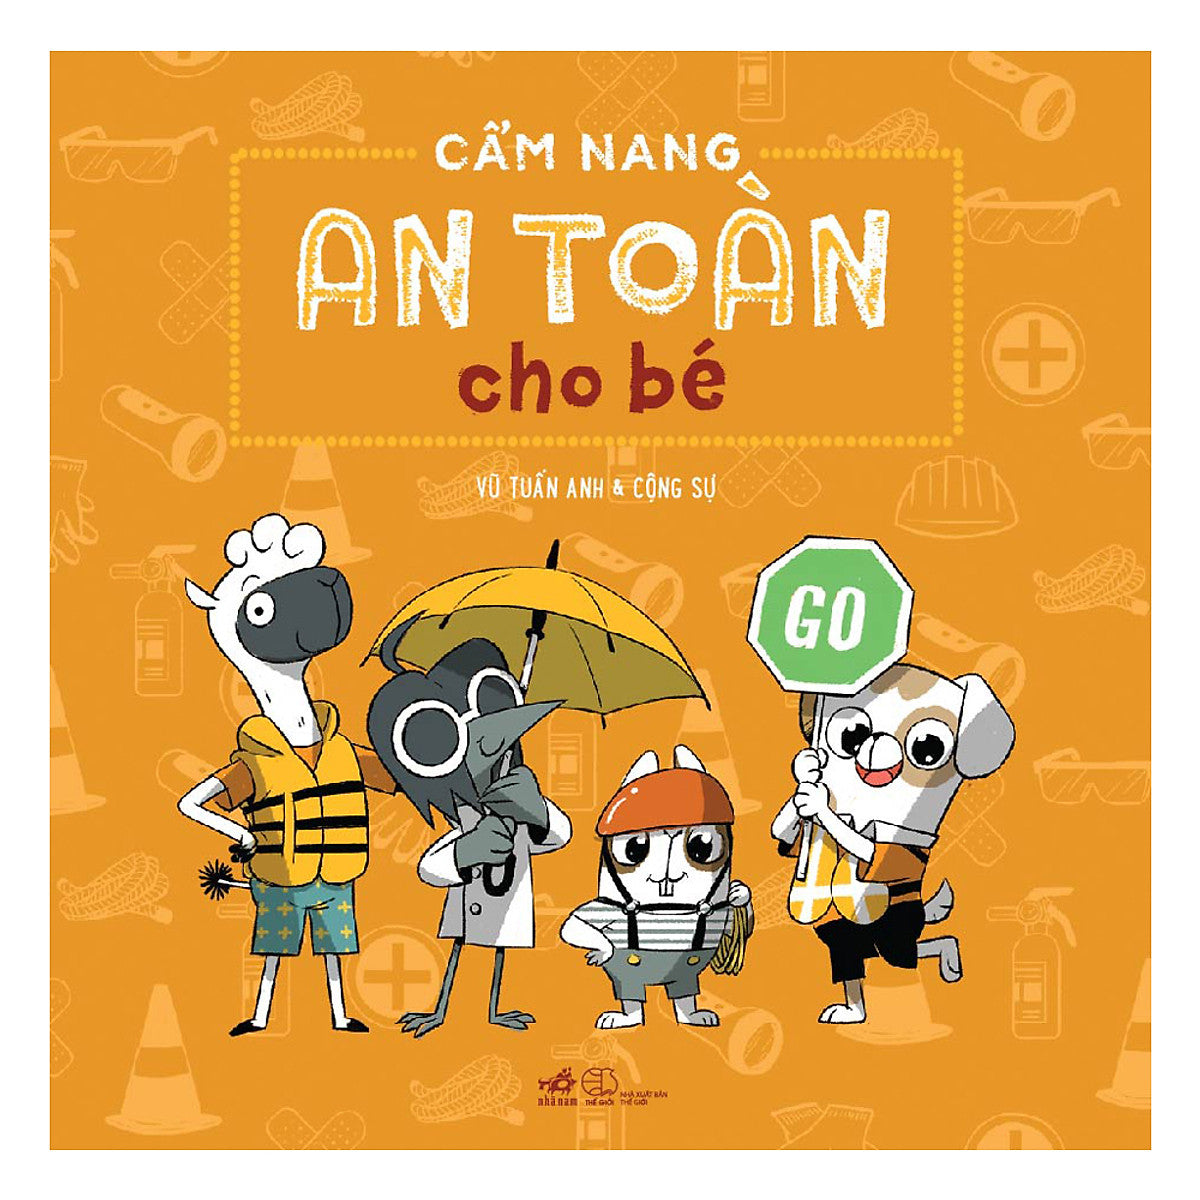 Cẩm Nang An Toàn Cho Bé